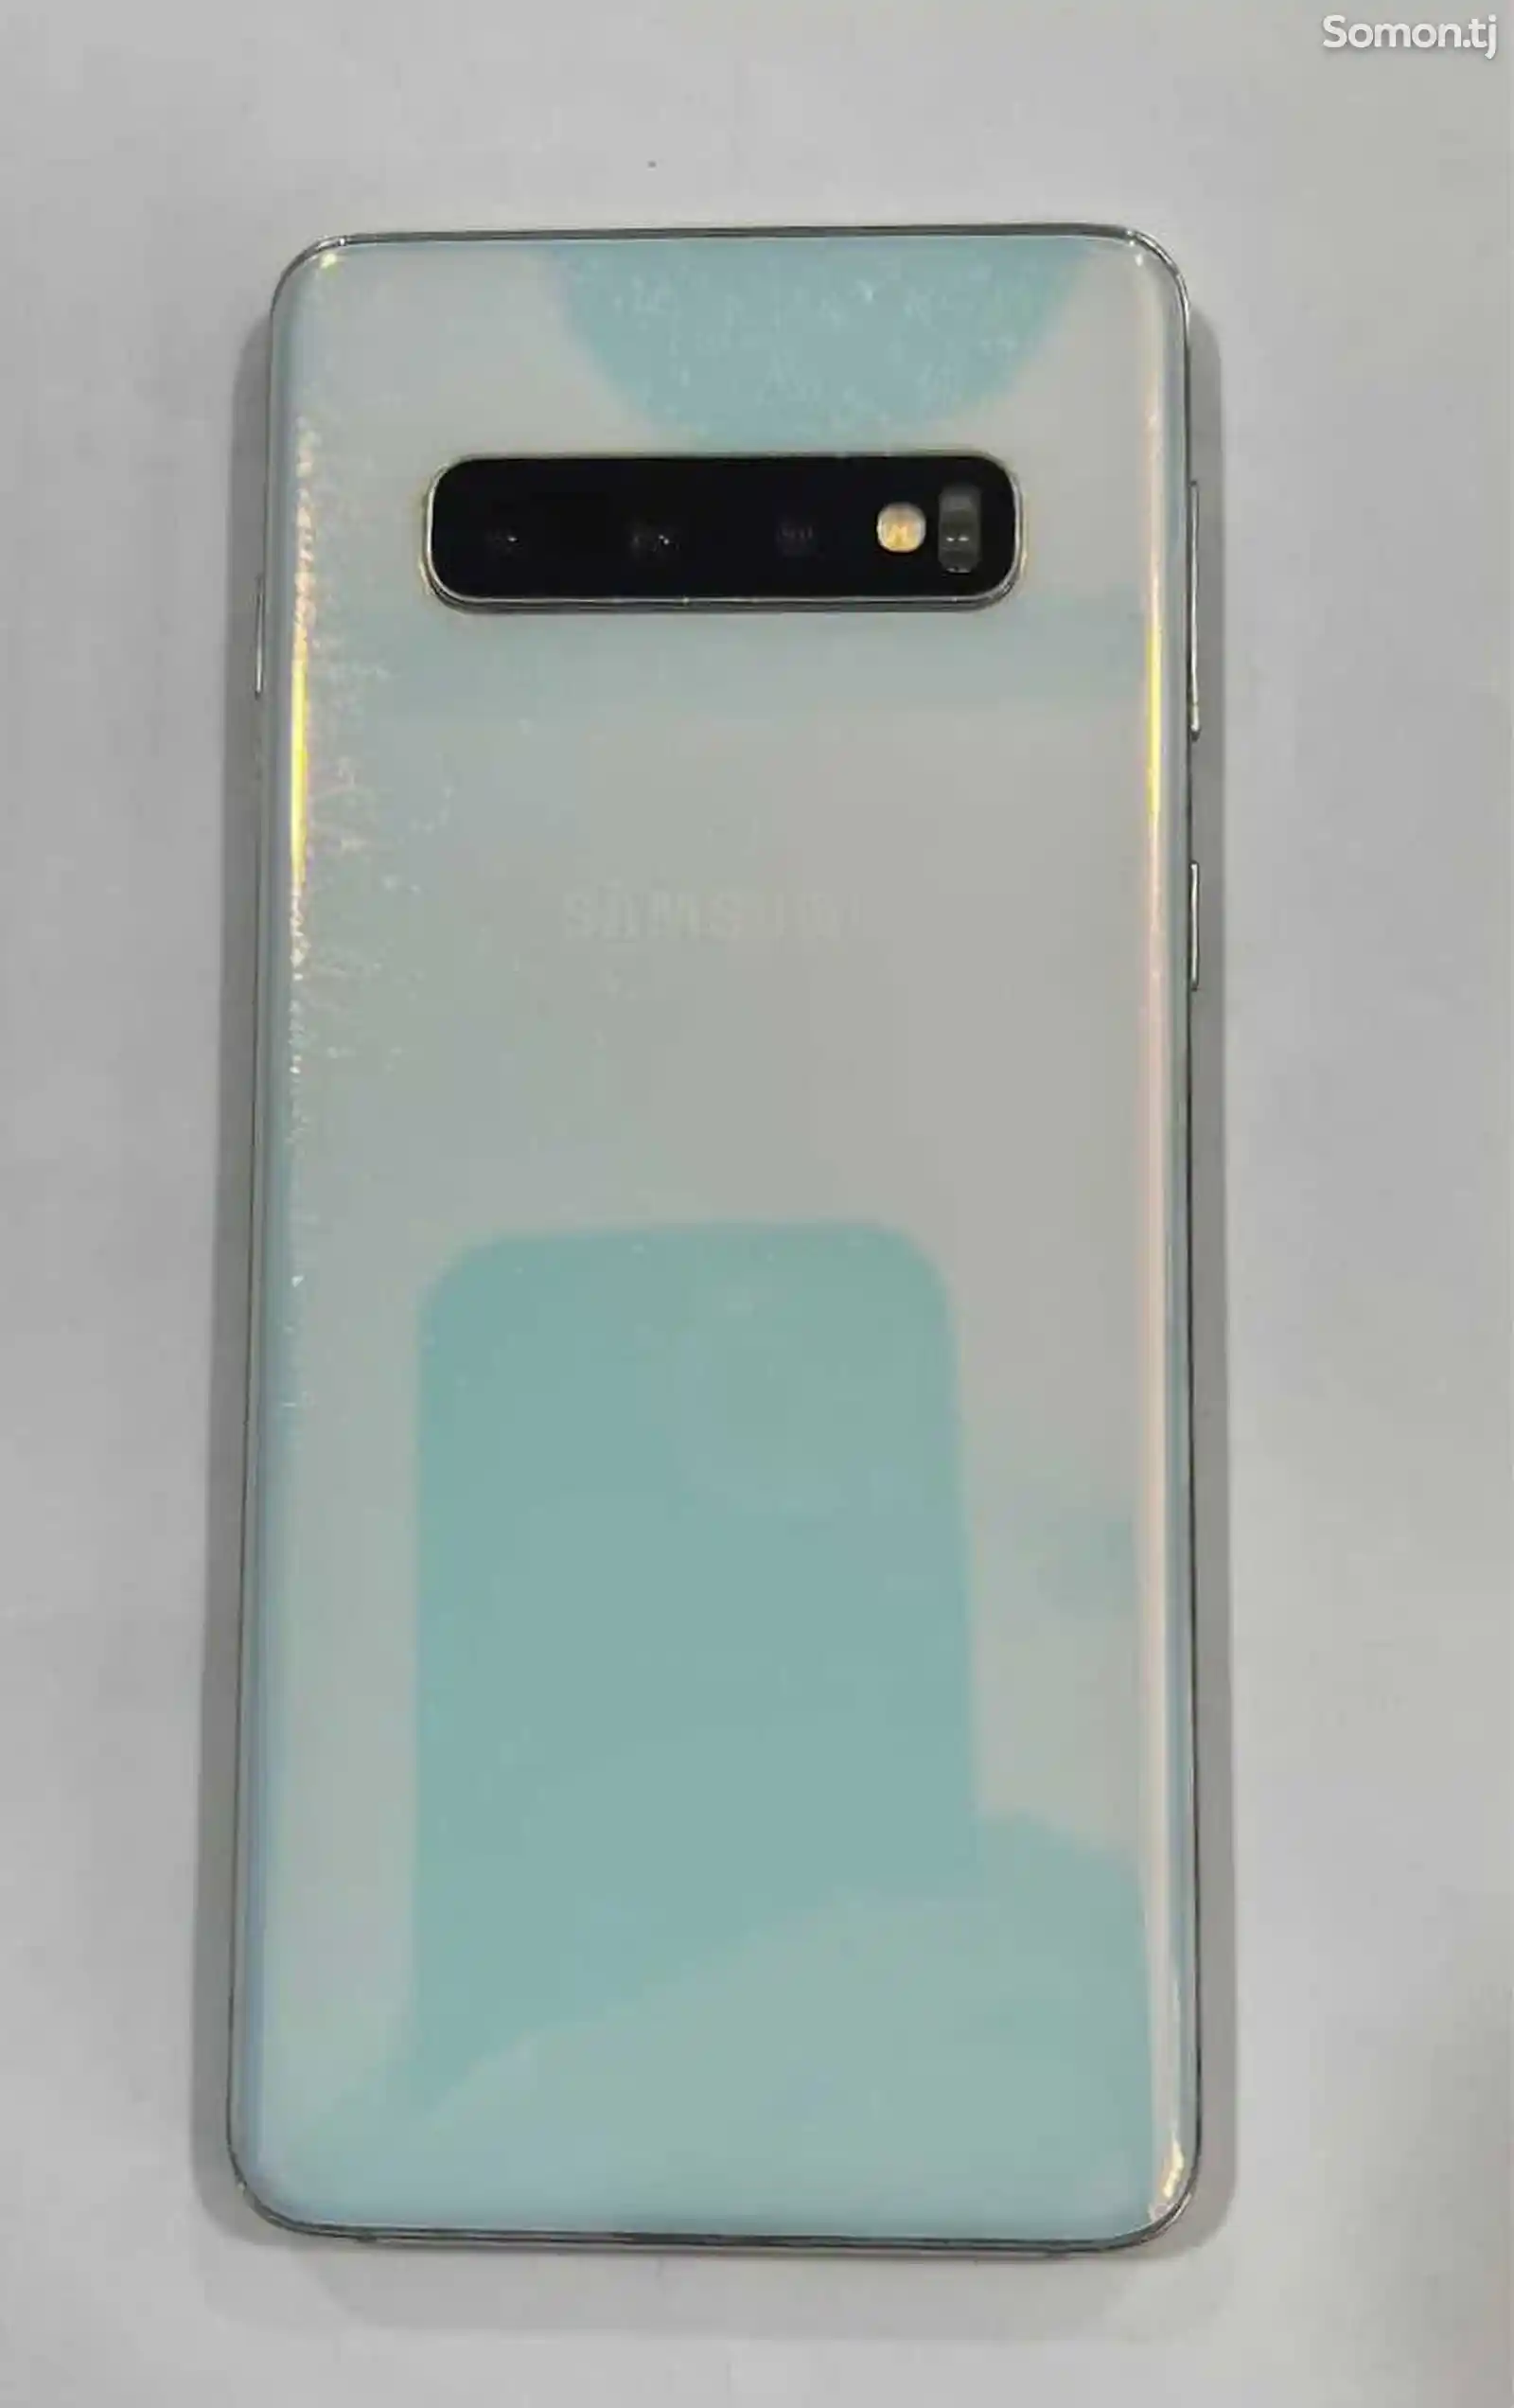 Samsung Galaxy S10-4